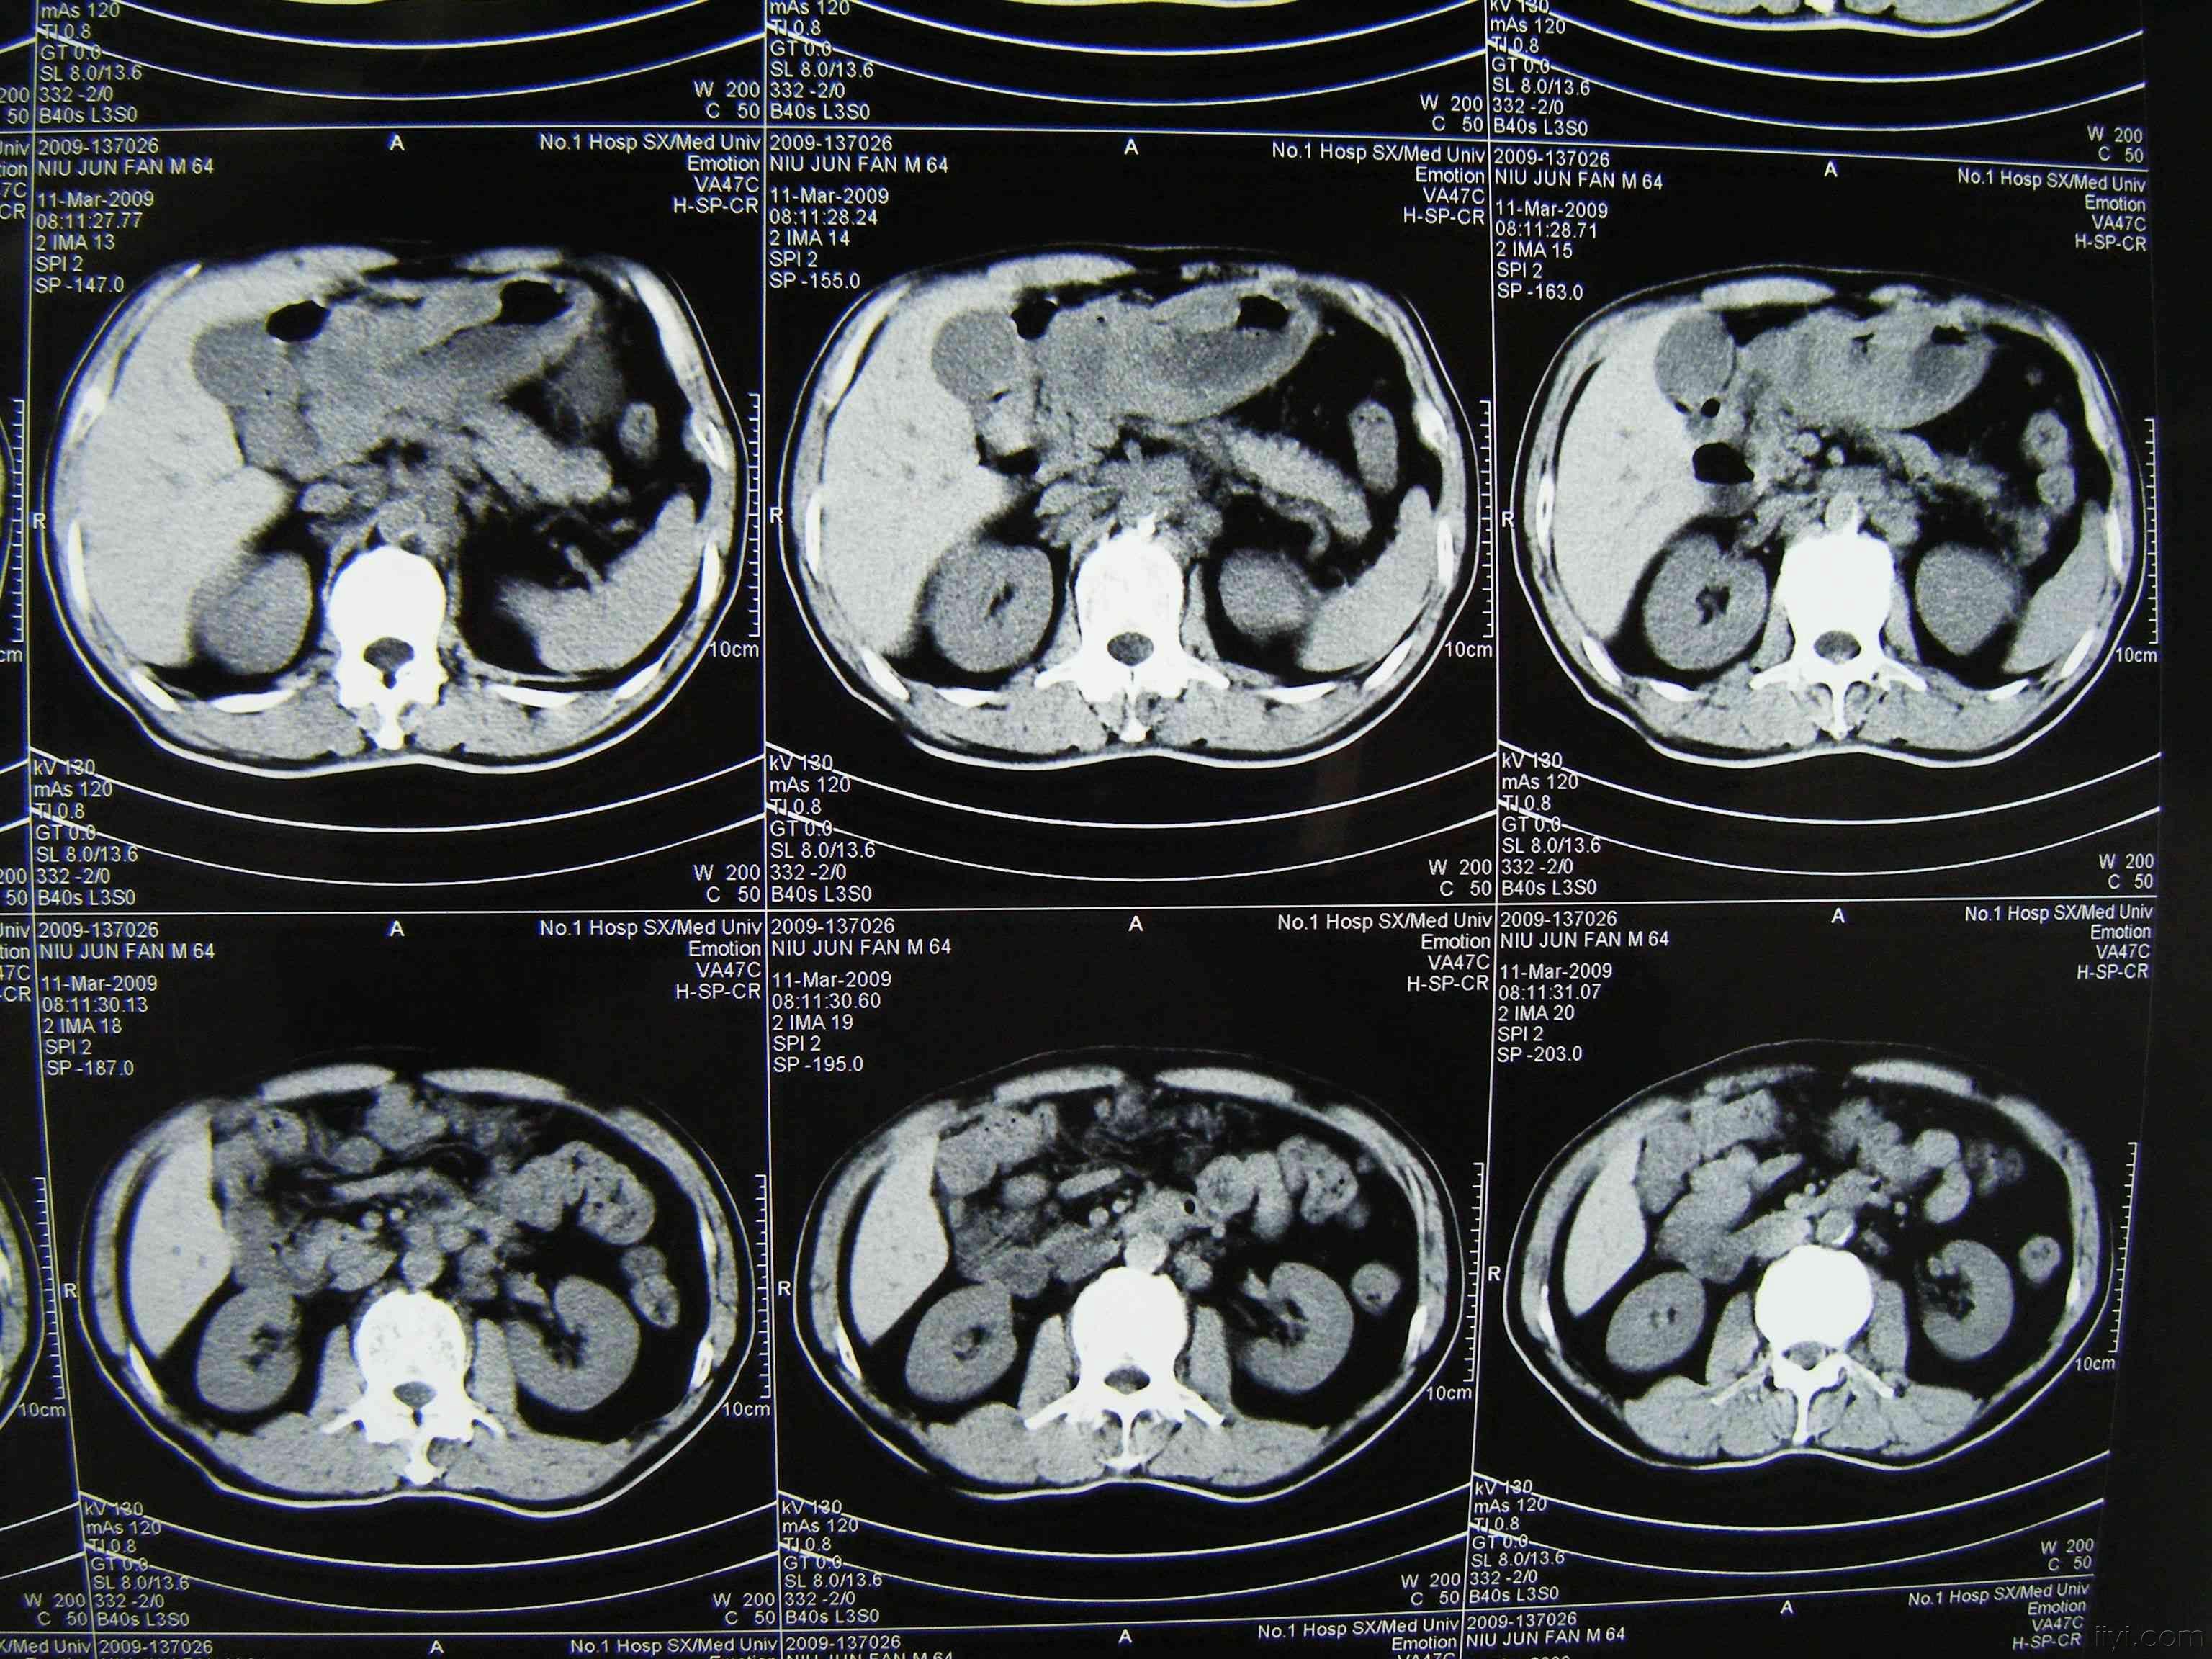 胃癌中期图片